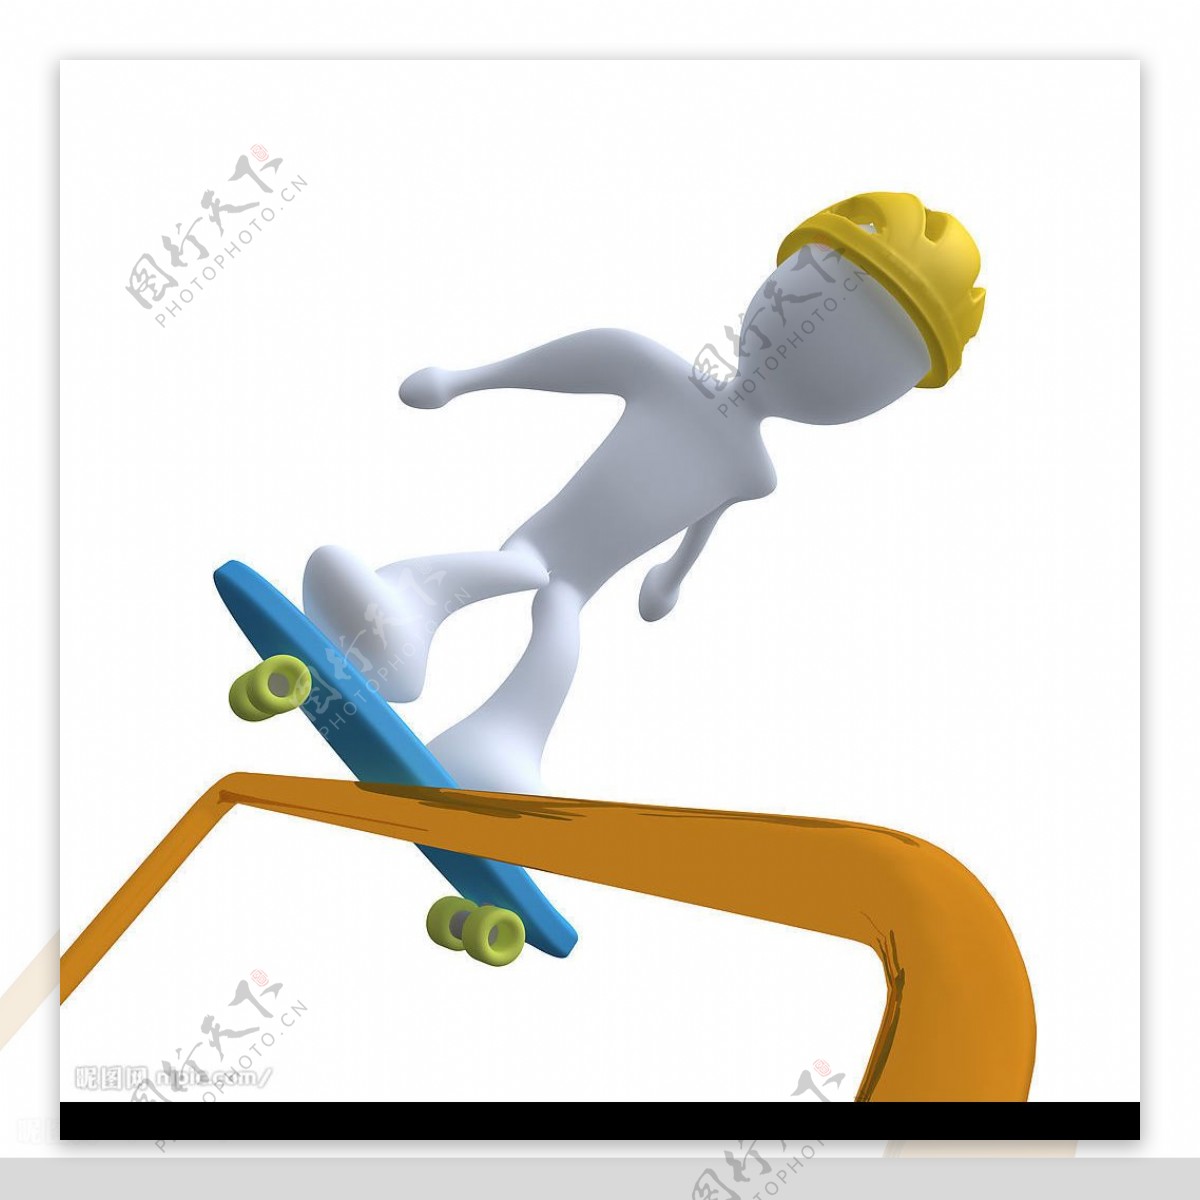 3D小人滑板图片